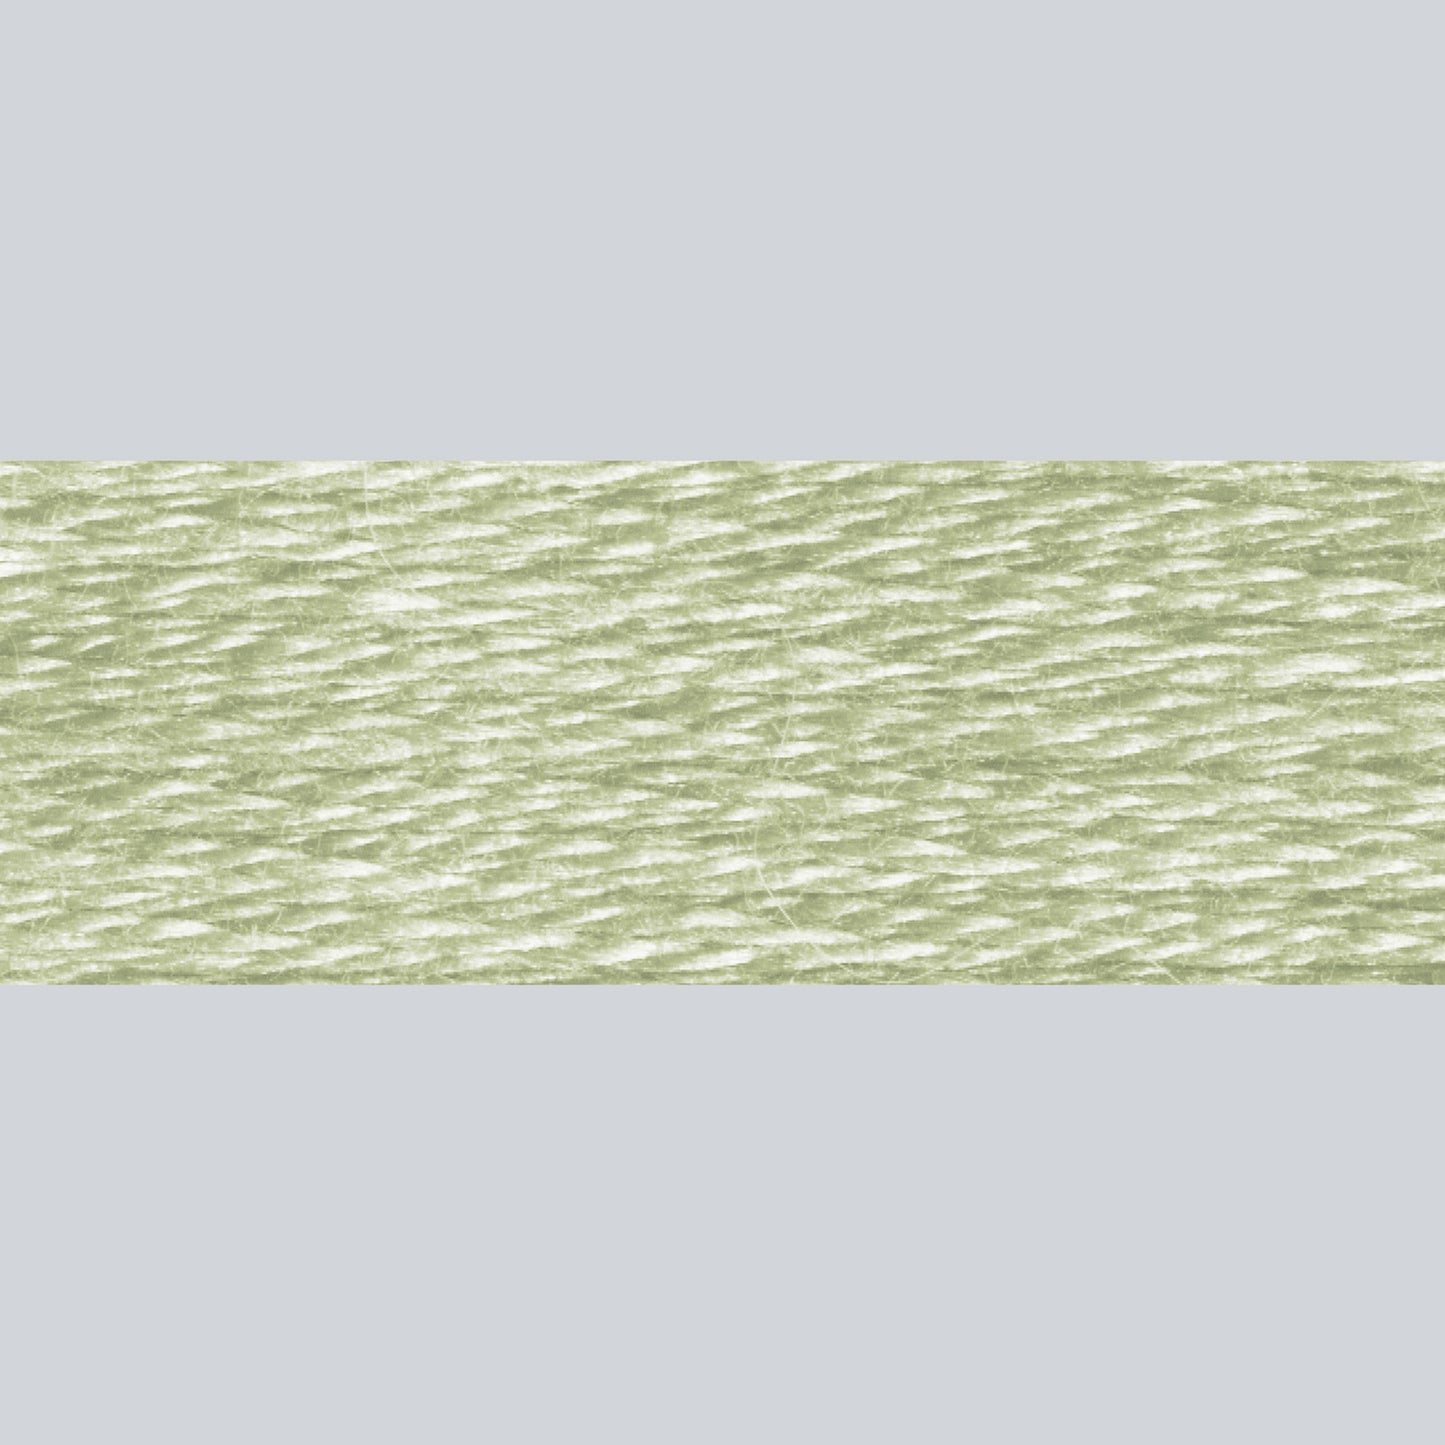 DMC Embroidery Floss - 523 Light Fern Green Alternative View #1